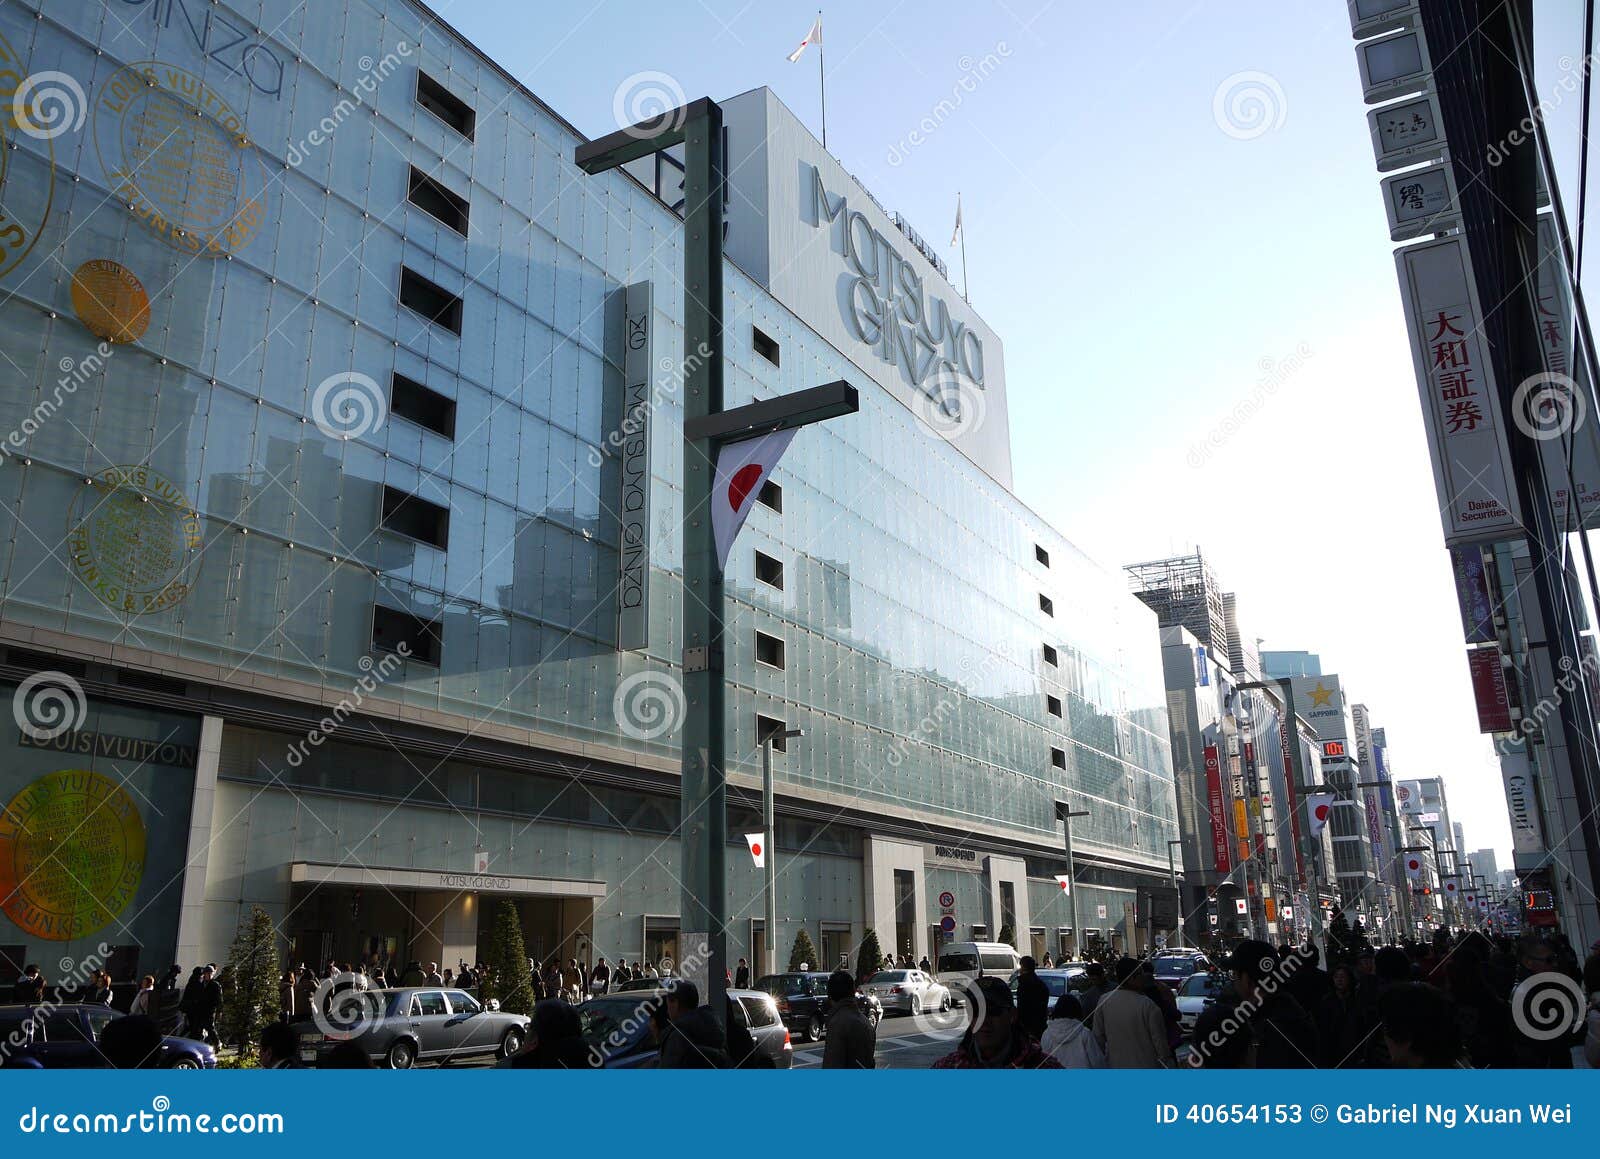 Tokyo, Ginza Shopping District at Tokyo, Japan Editorial Stock Photo ...